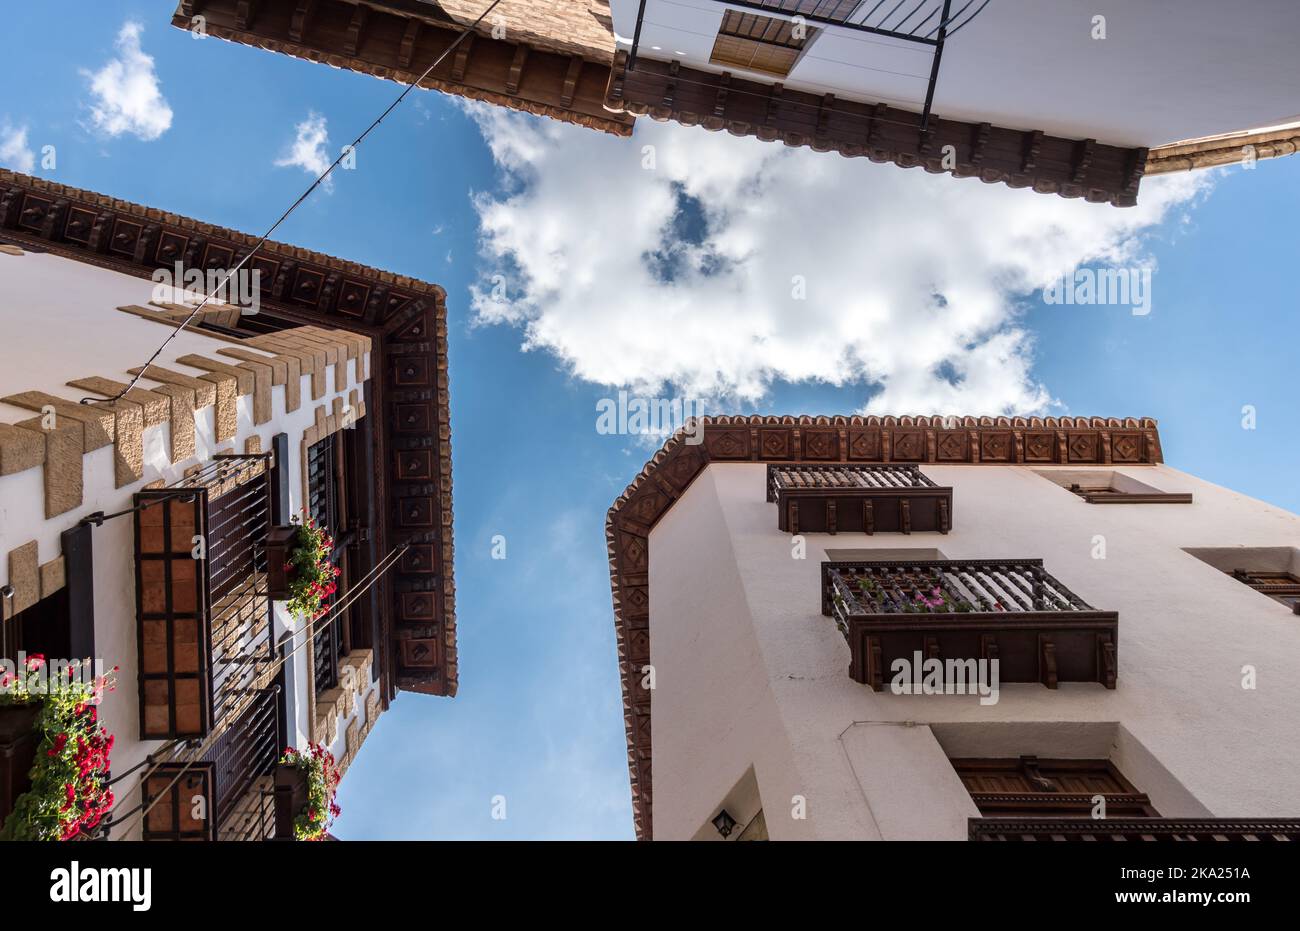 Hölzerne Dachrinnen von Häusern altes Dorf von Spanien, geschnitzte Holzschnitzerei blauen Himmel und Wolken Blick, traditionelle Architektur Gebäude Stockfoto